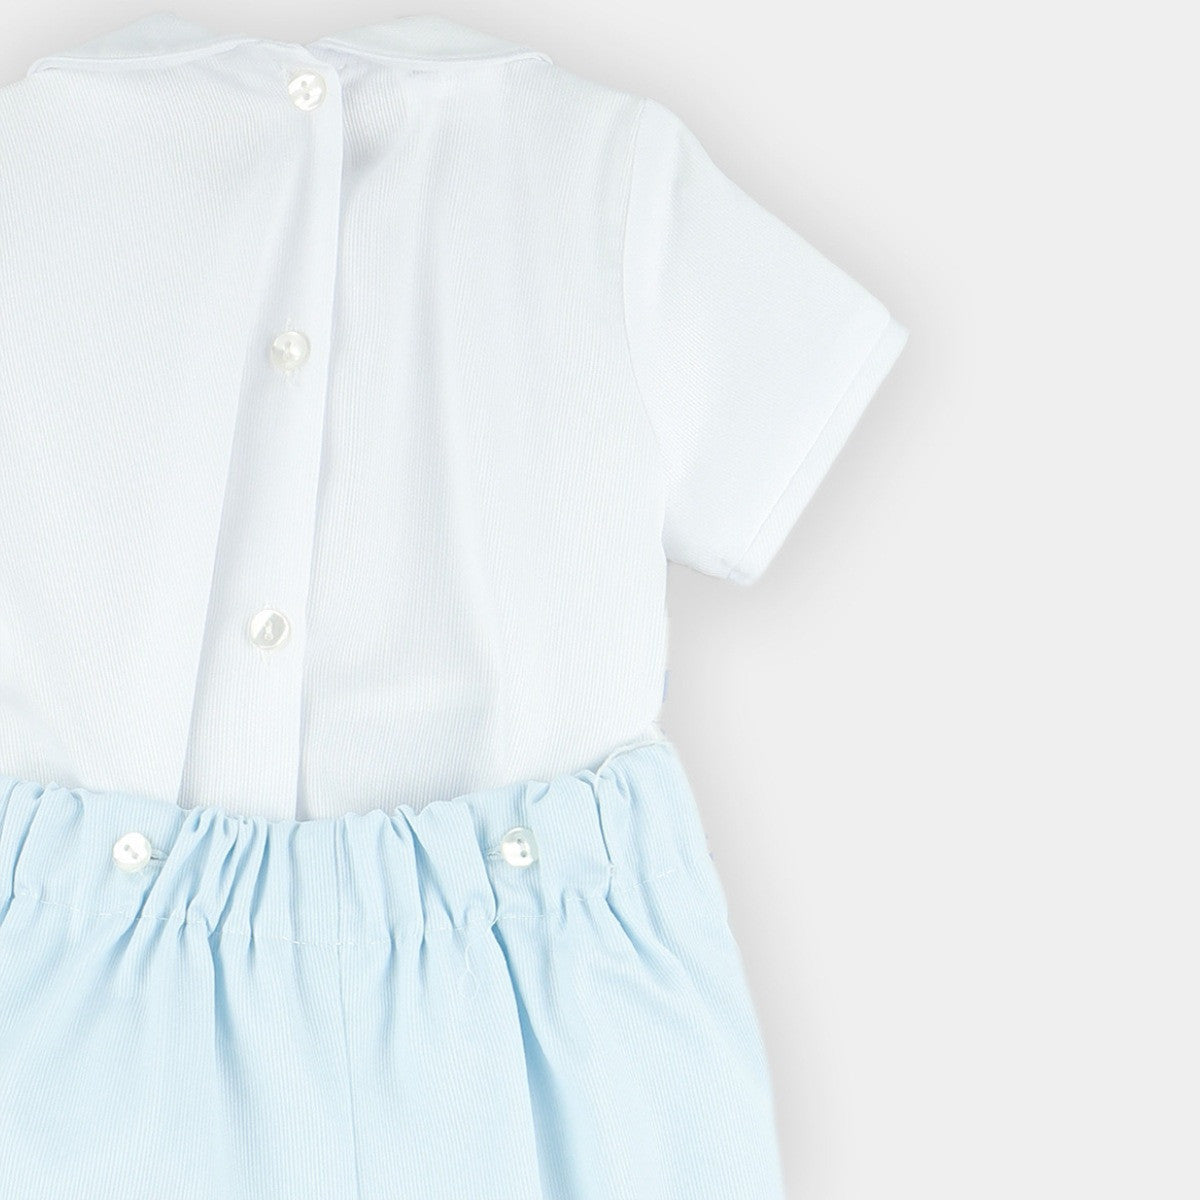 Babyferr baby blue shorts & shirt set